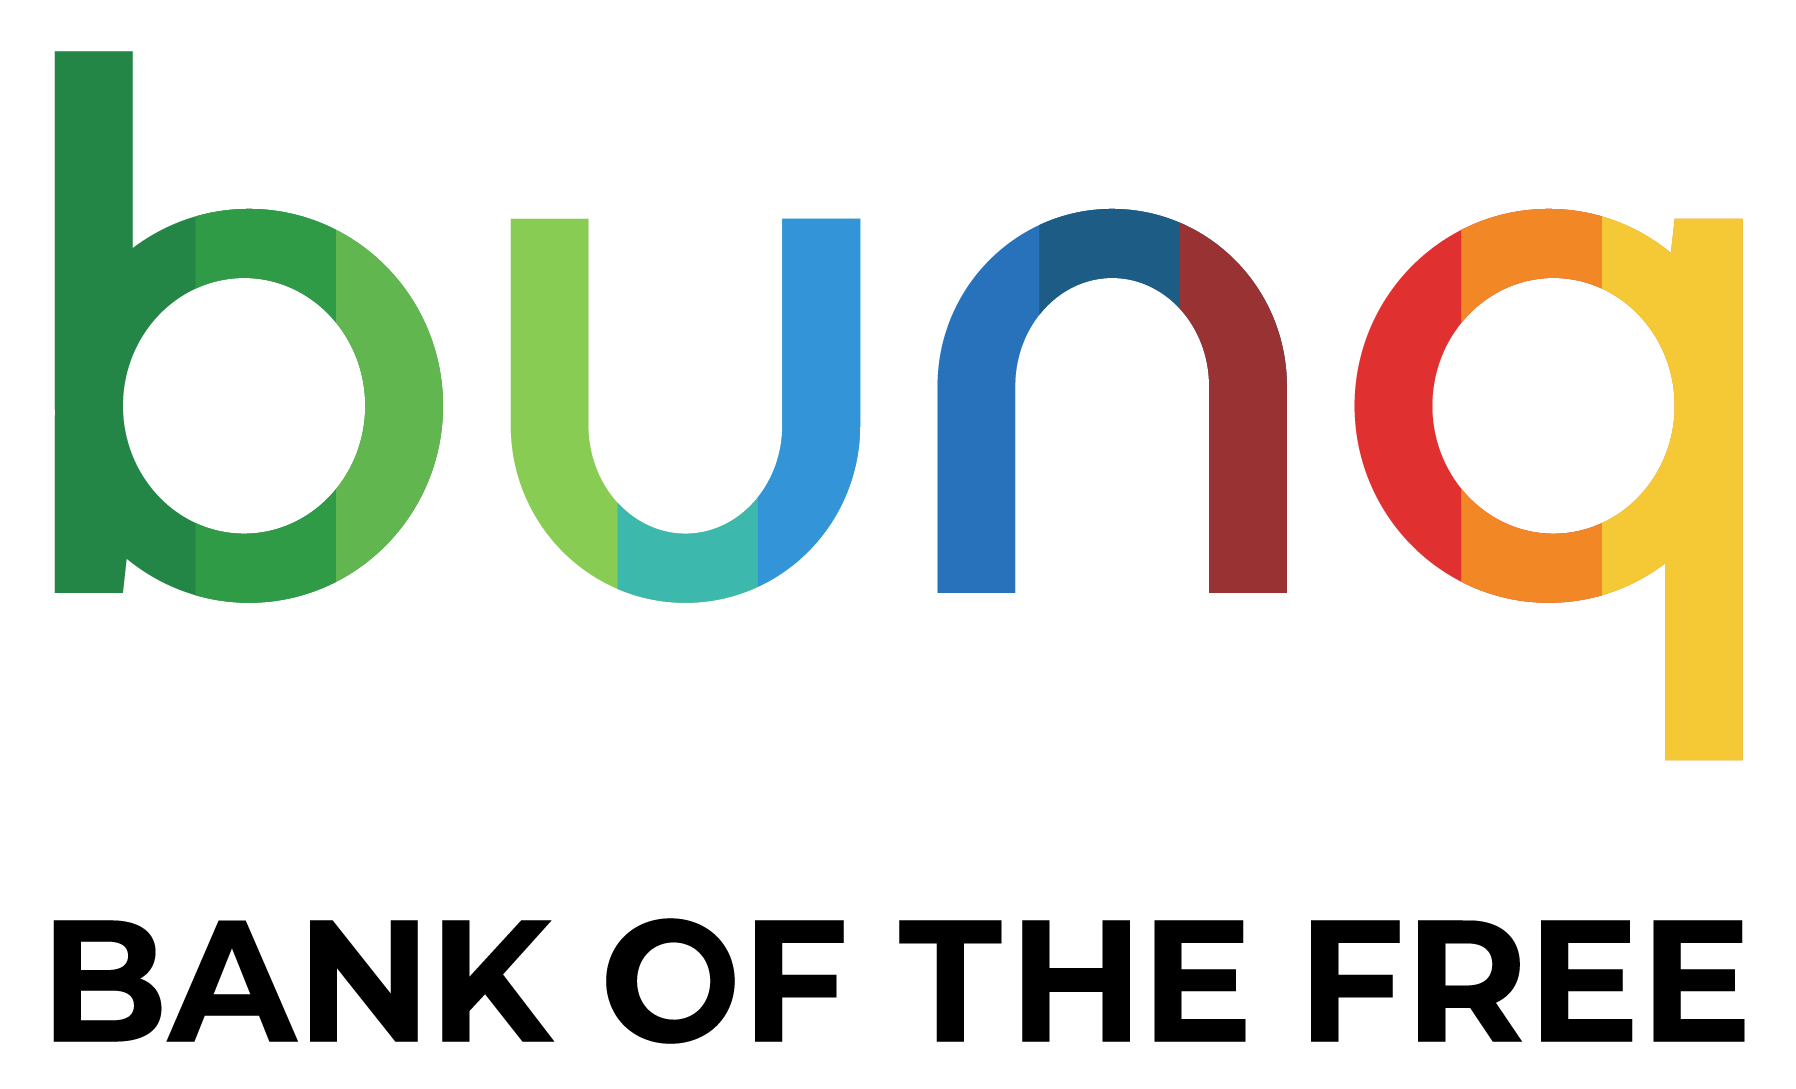 bunq logo